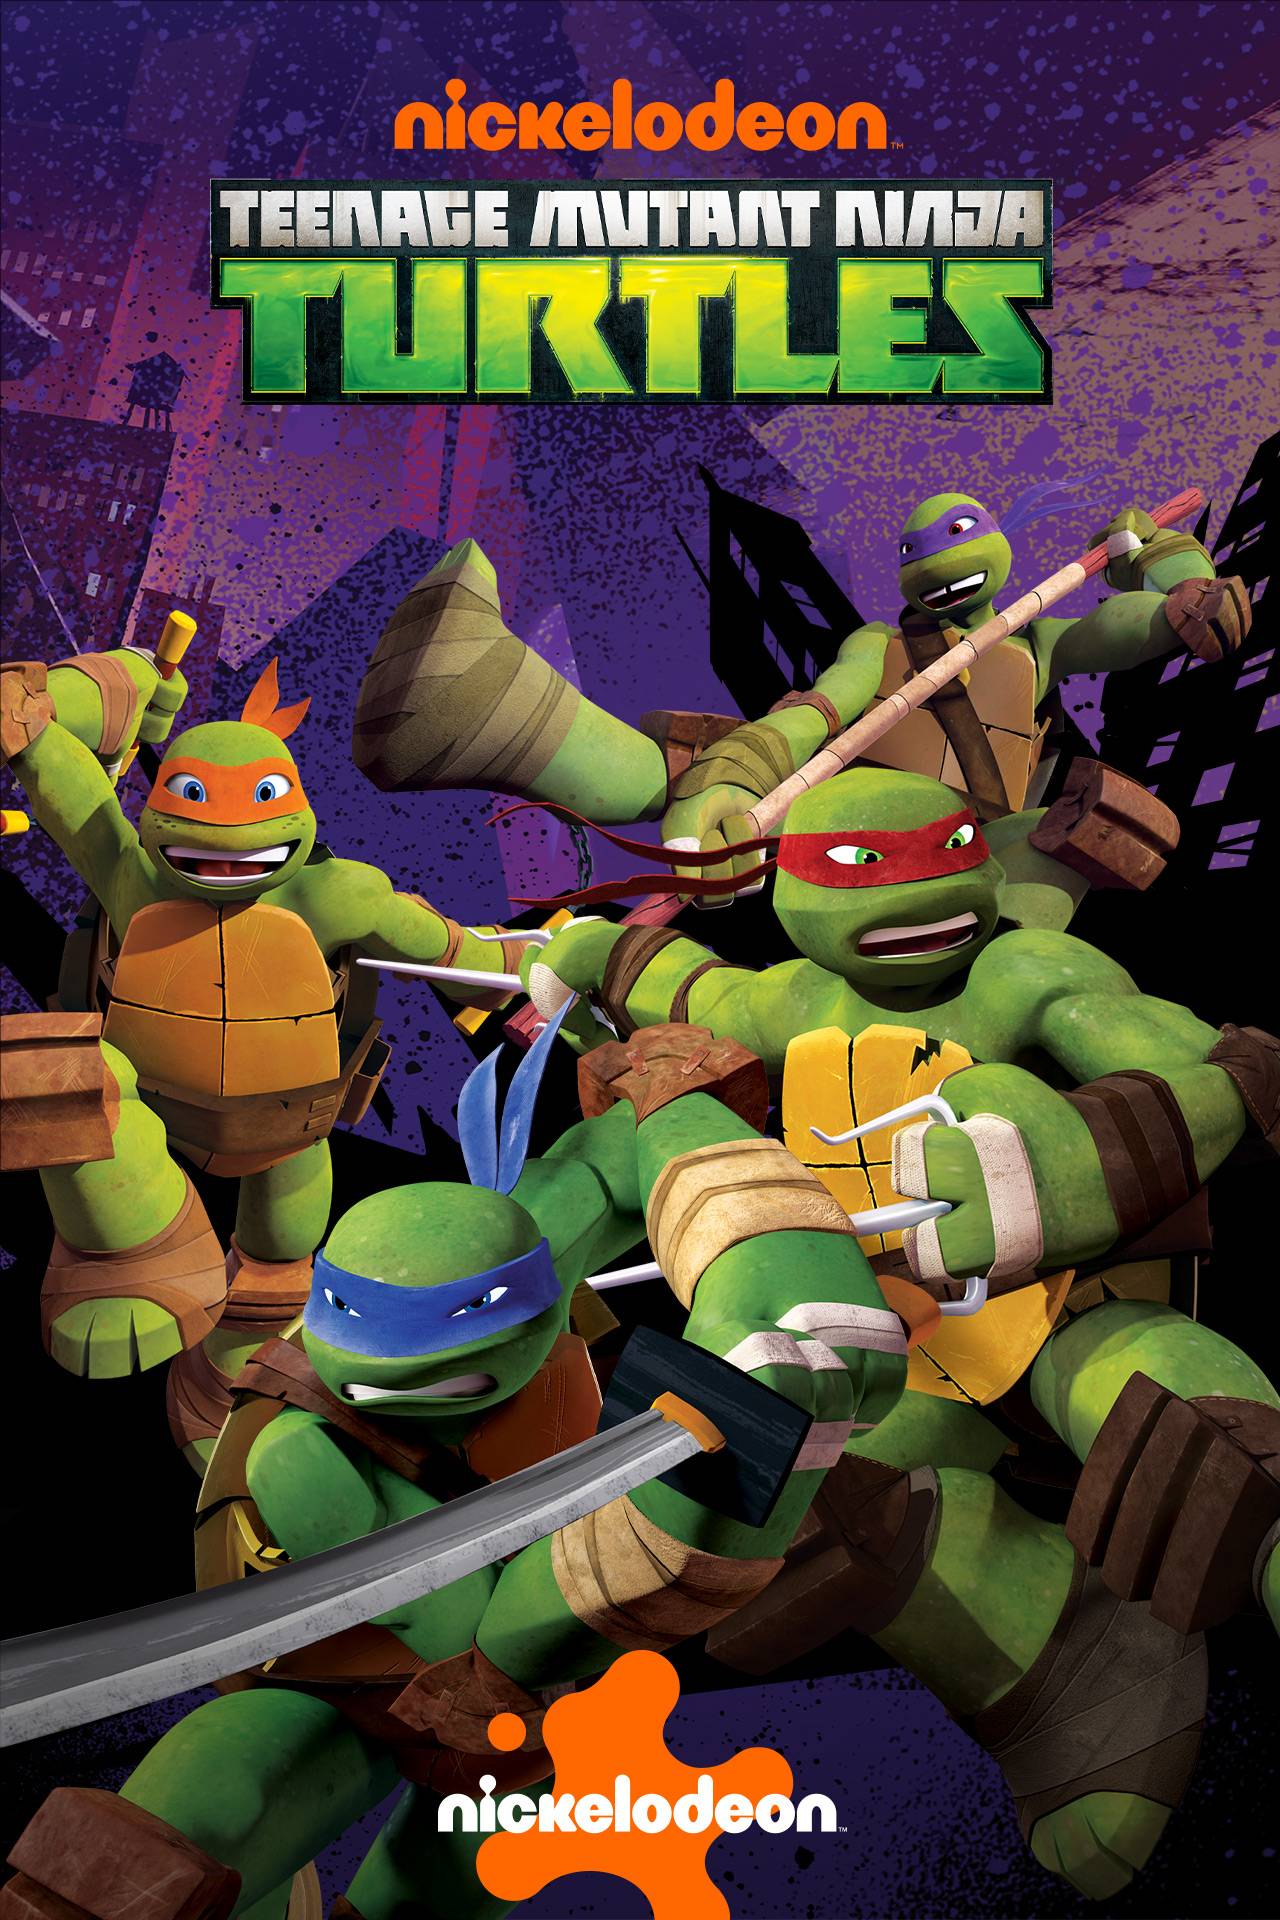 Teenage Mutant Ninja Turtles - Ninja Turtles - Toddler And Youth